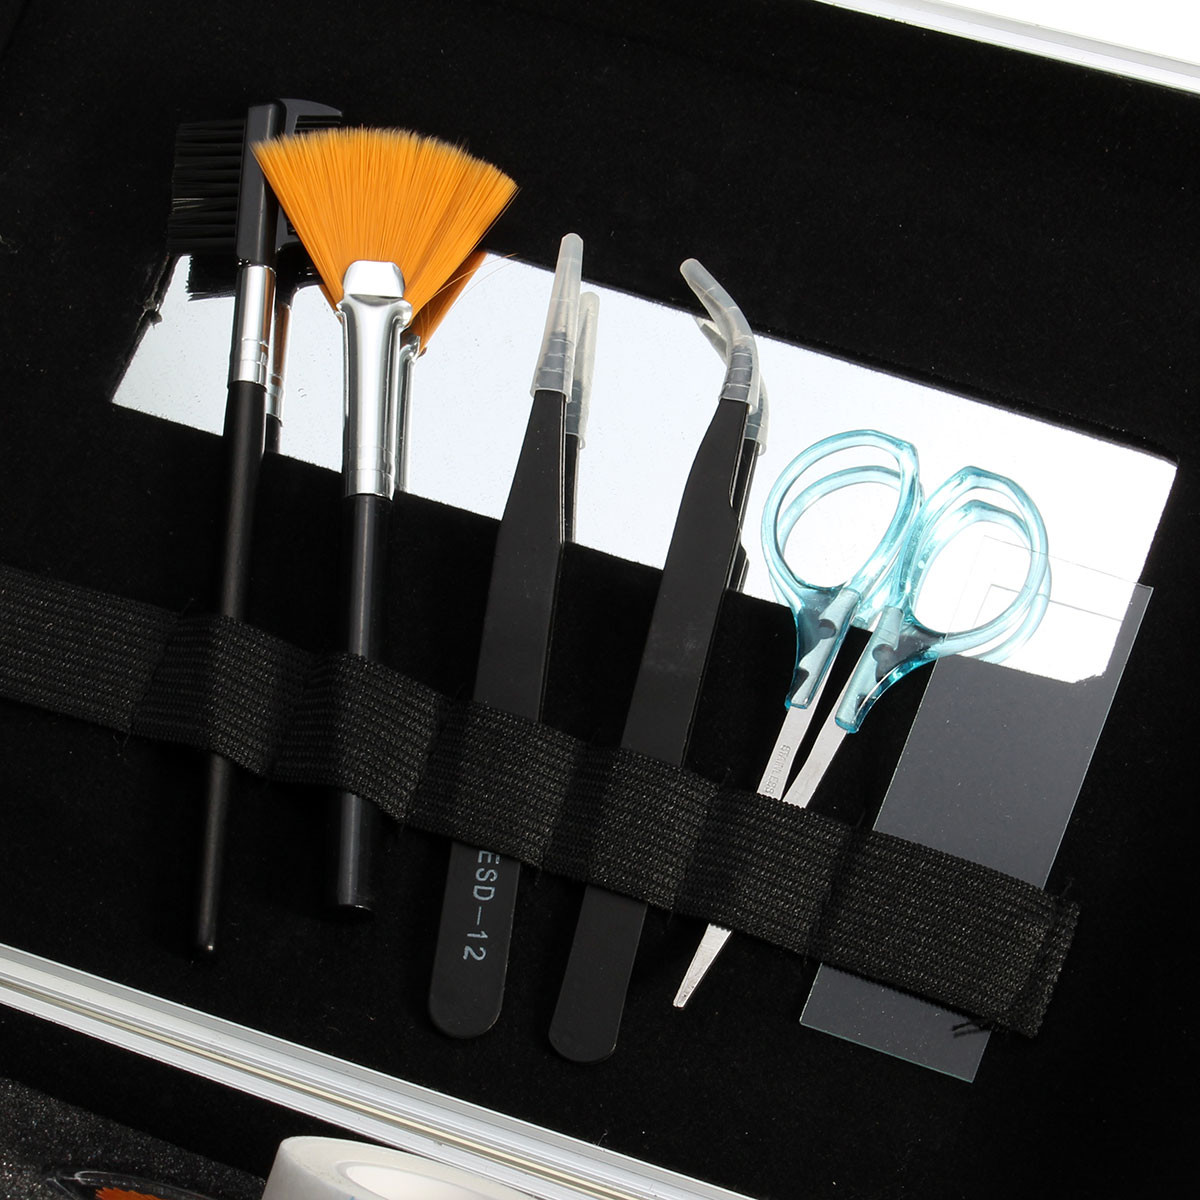 Professional False Eye Lash Eyelash Extension Glue Brush Set With Case